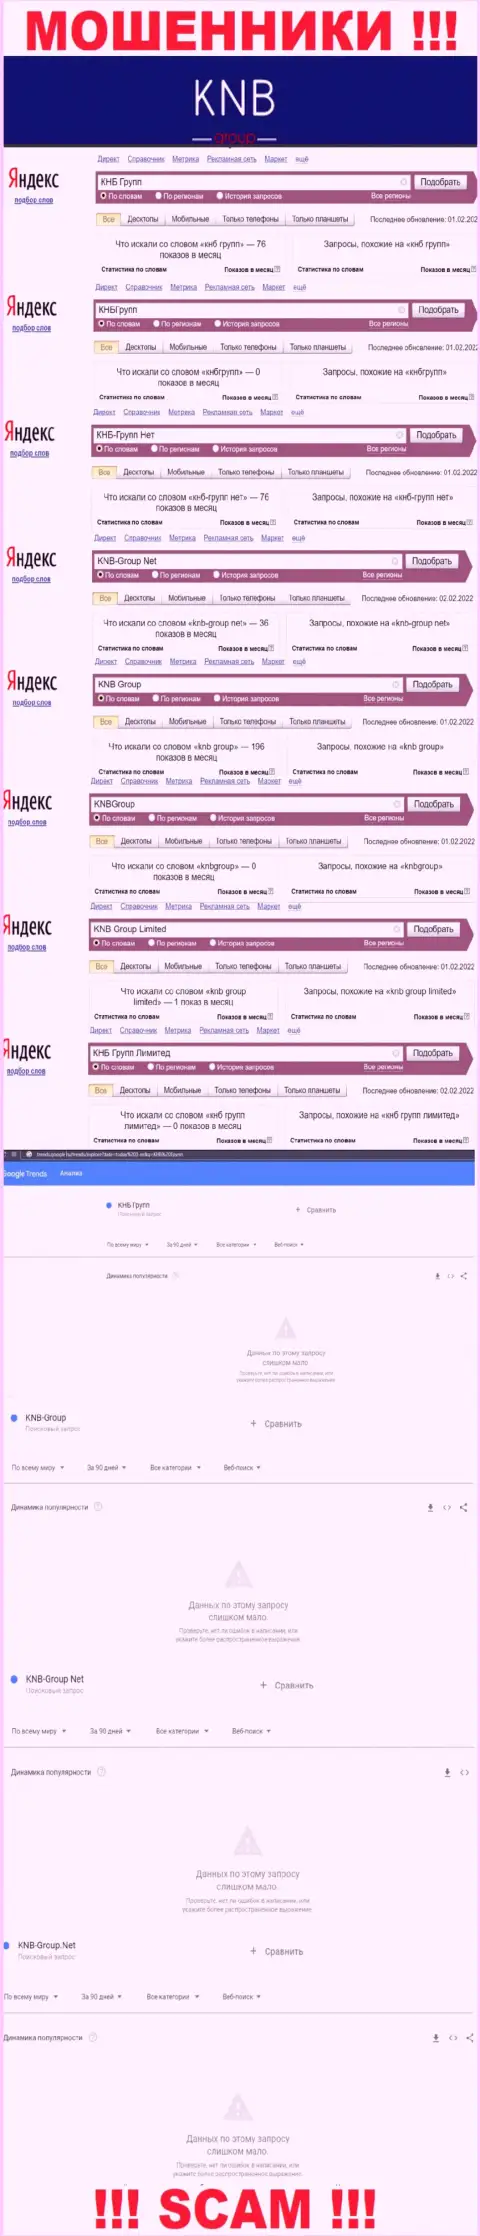 Скрин результатов онлайн запросов по противоправно действующей организации КНБГрупп